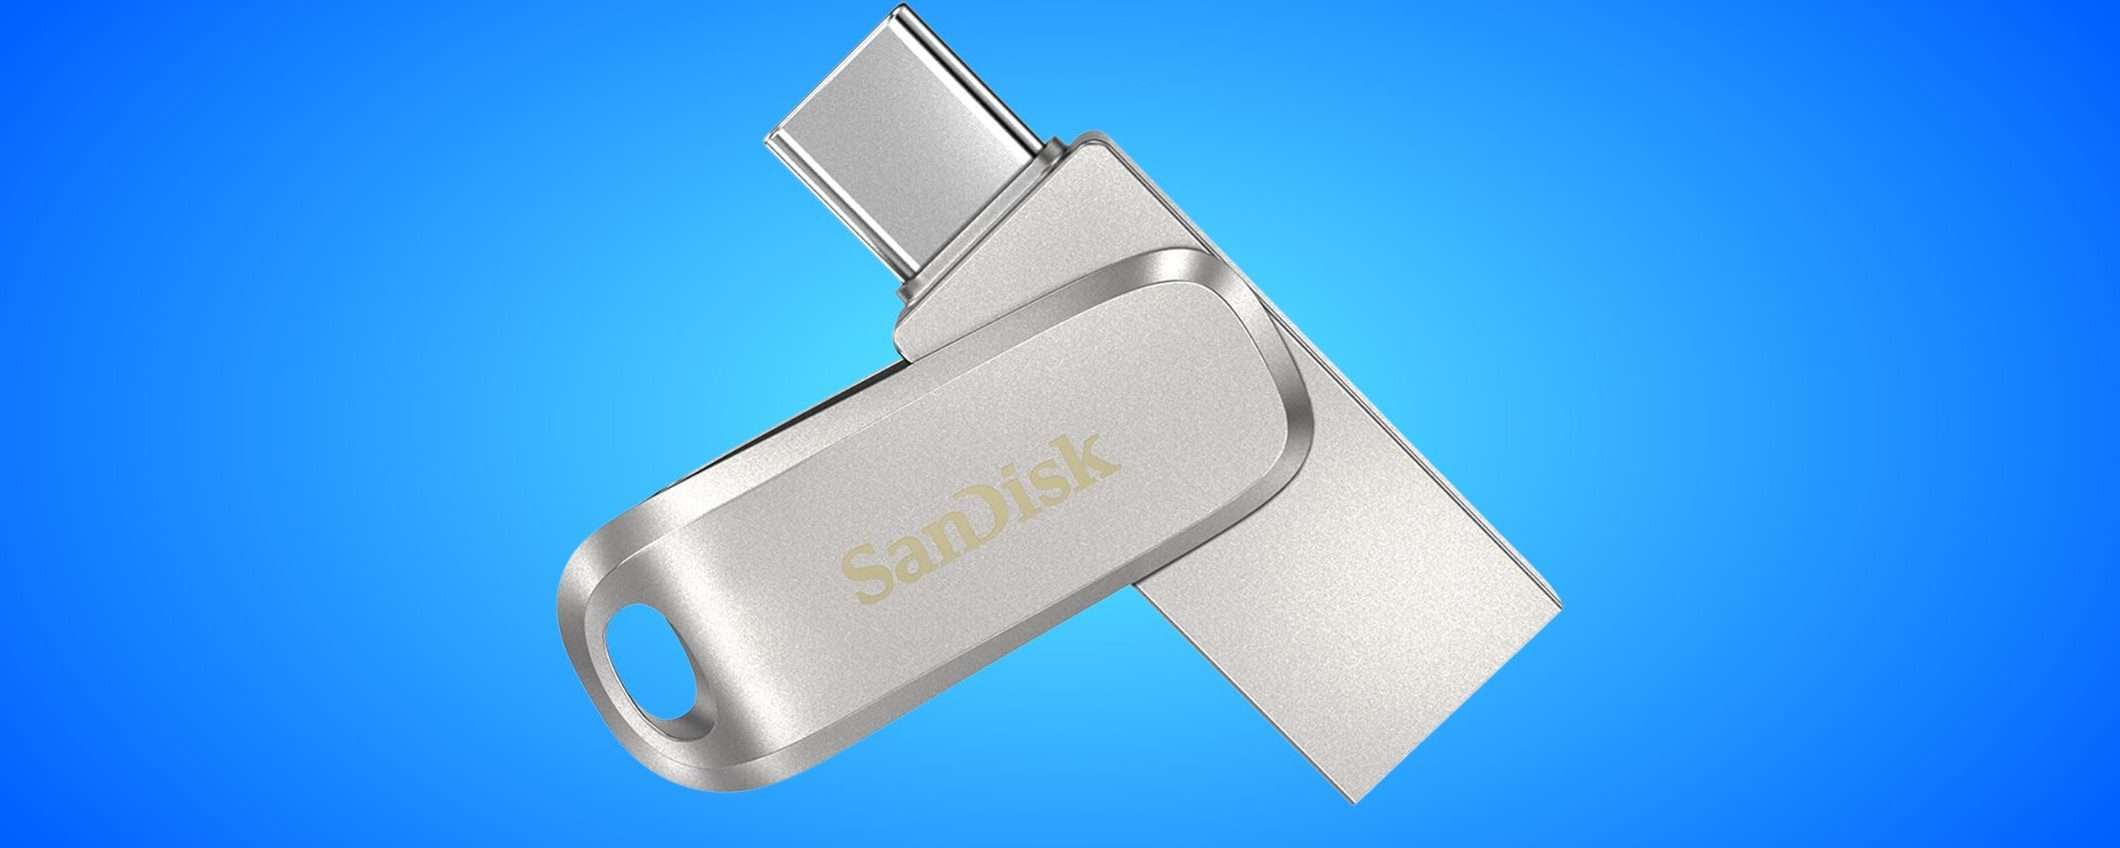 Chiavetta USB 3.1 SanDisk con DOPPIO CONNETTORE a soli 12€